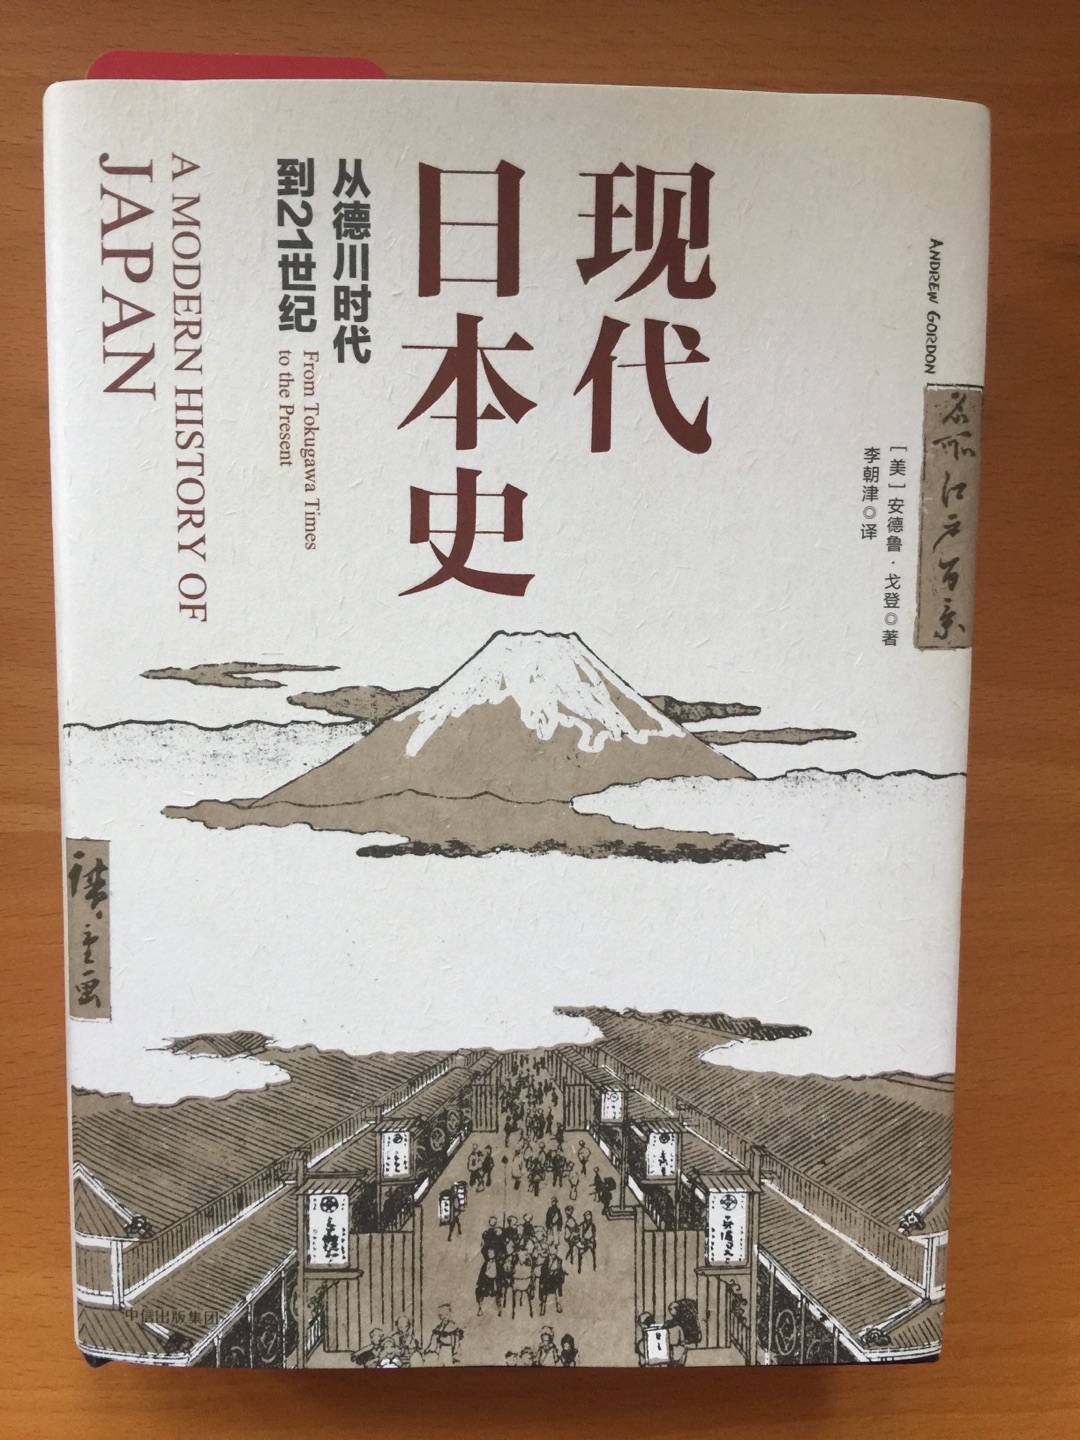 这本书从一定的角度来看日本为什么发展如此之快。日本将自己的定位于东西方之间是有一定道理的。去过日本你会发现它似乎和传统的亚洲有所不同，这本书中可以找到一些答案。